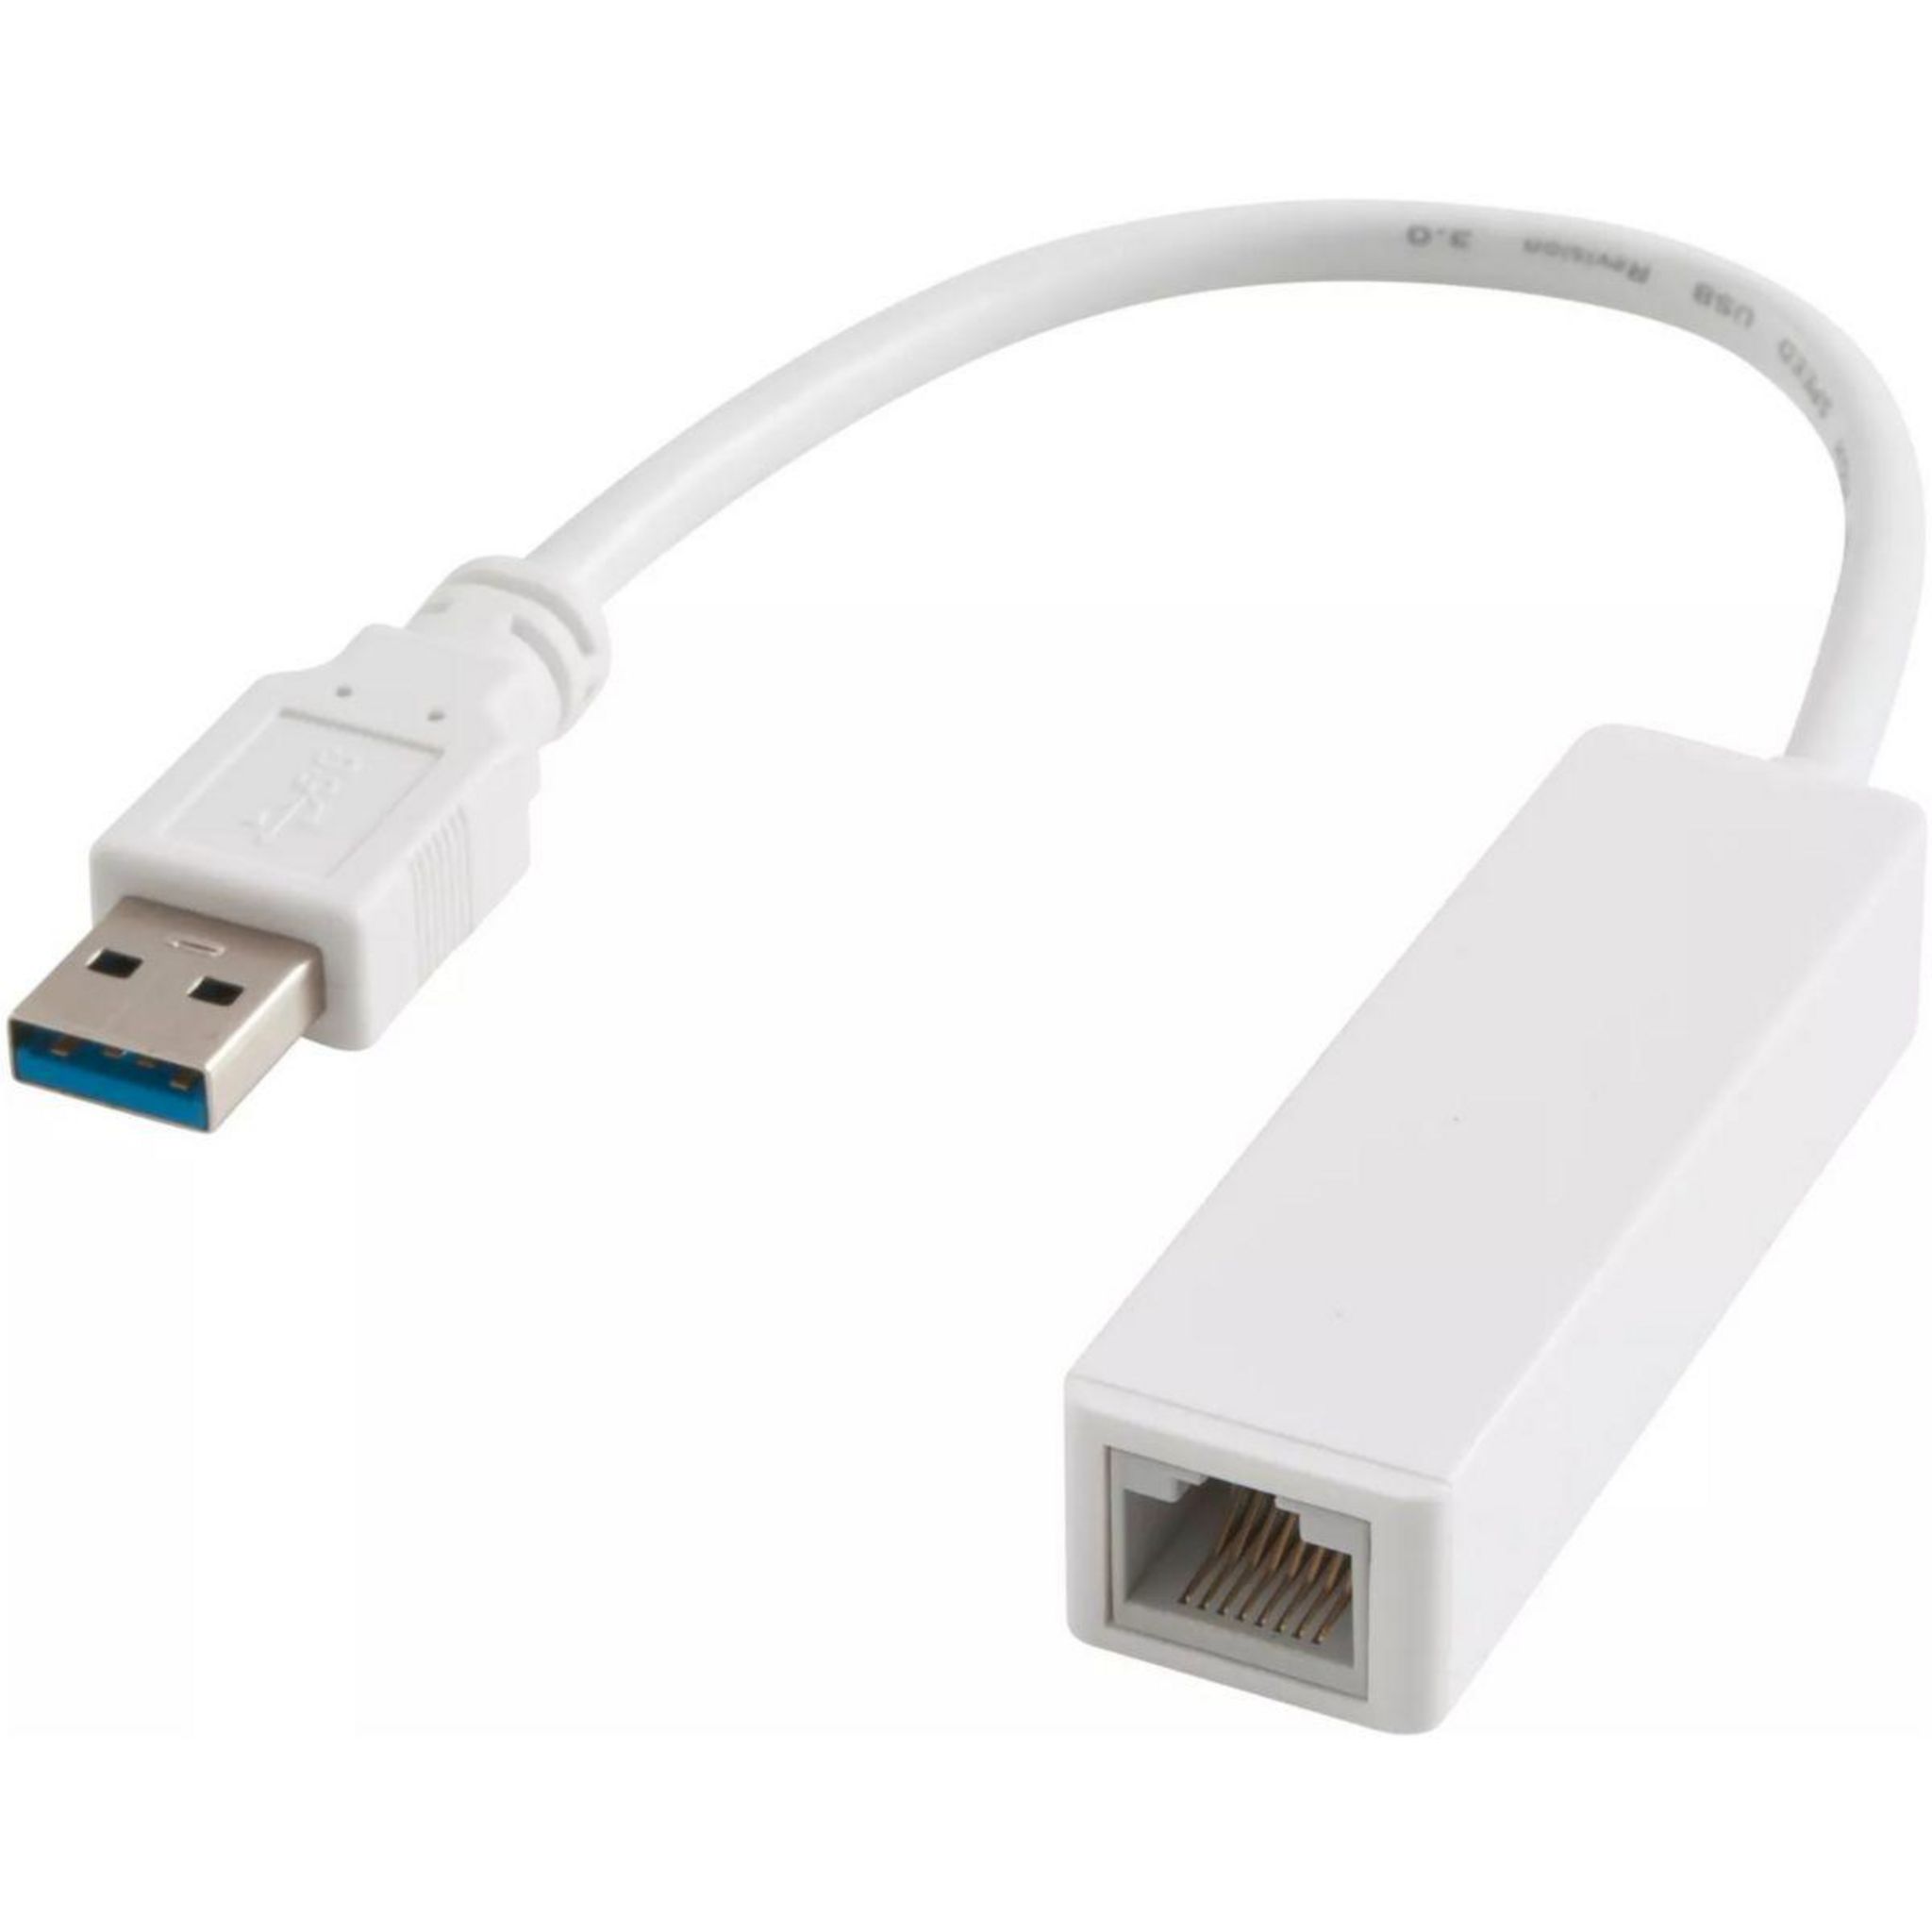 XTREMEMAC Adaptateur Ethernet USB A femelle vers RJ45 femelle pas cher 